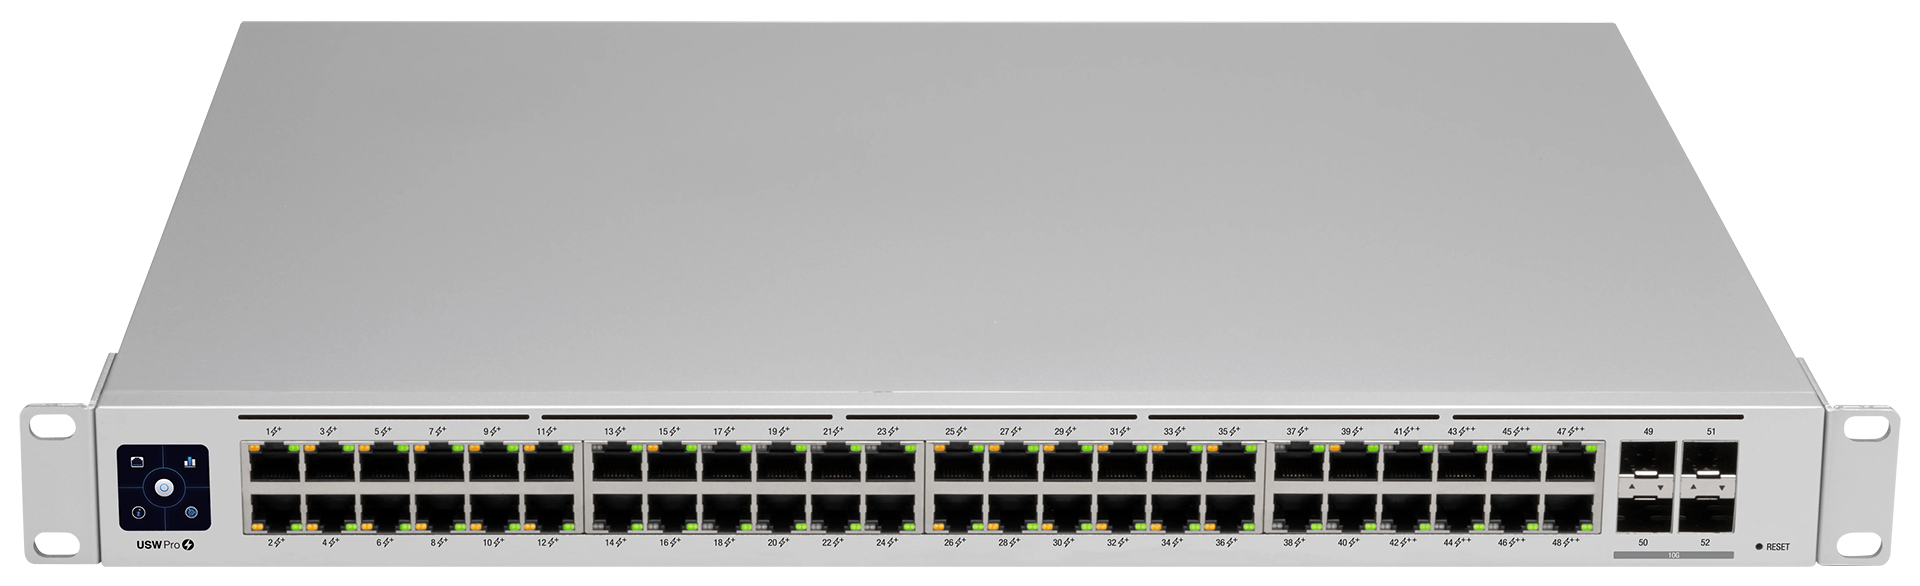 48 Port Ubiquiti UniFi USW-PRO-48-POE Managed Gigabit Network Switch with Power over Ethernet